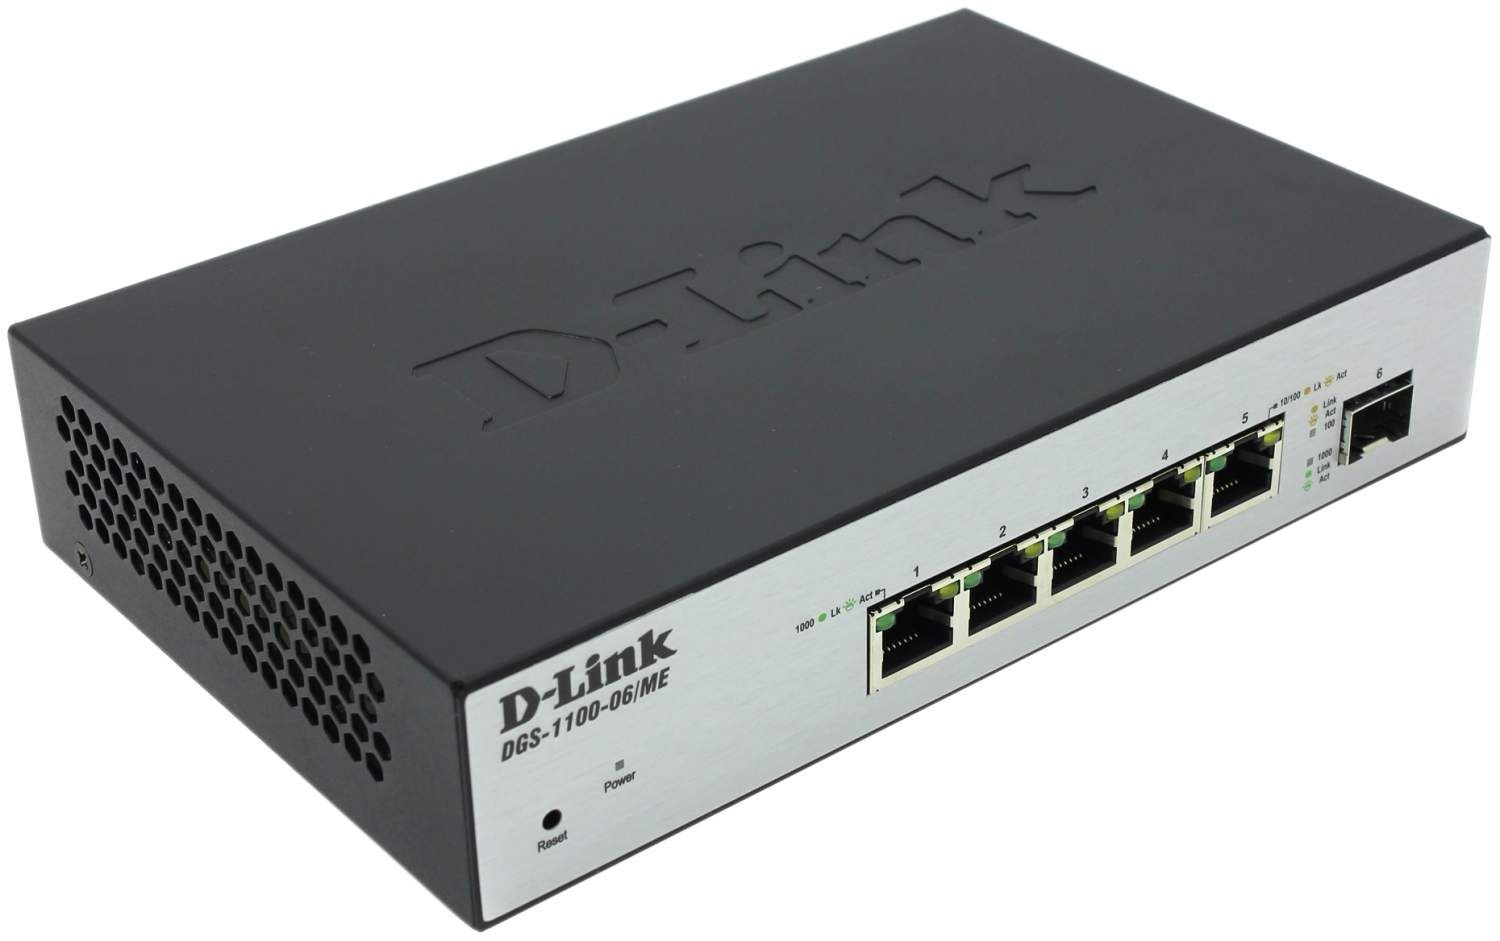 Коммутатор D-Link DGS-1100-06/ME/A1B коммутатор mikrotik rb260gsp 5 портов 10 100 1000 ethernet 4 порта poe sfp